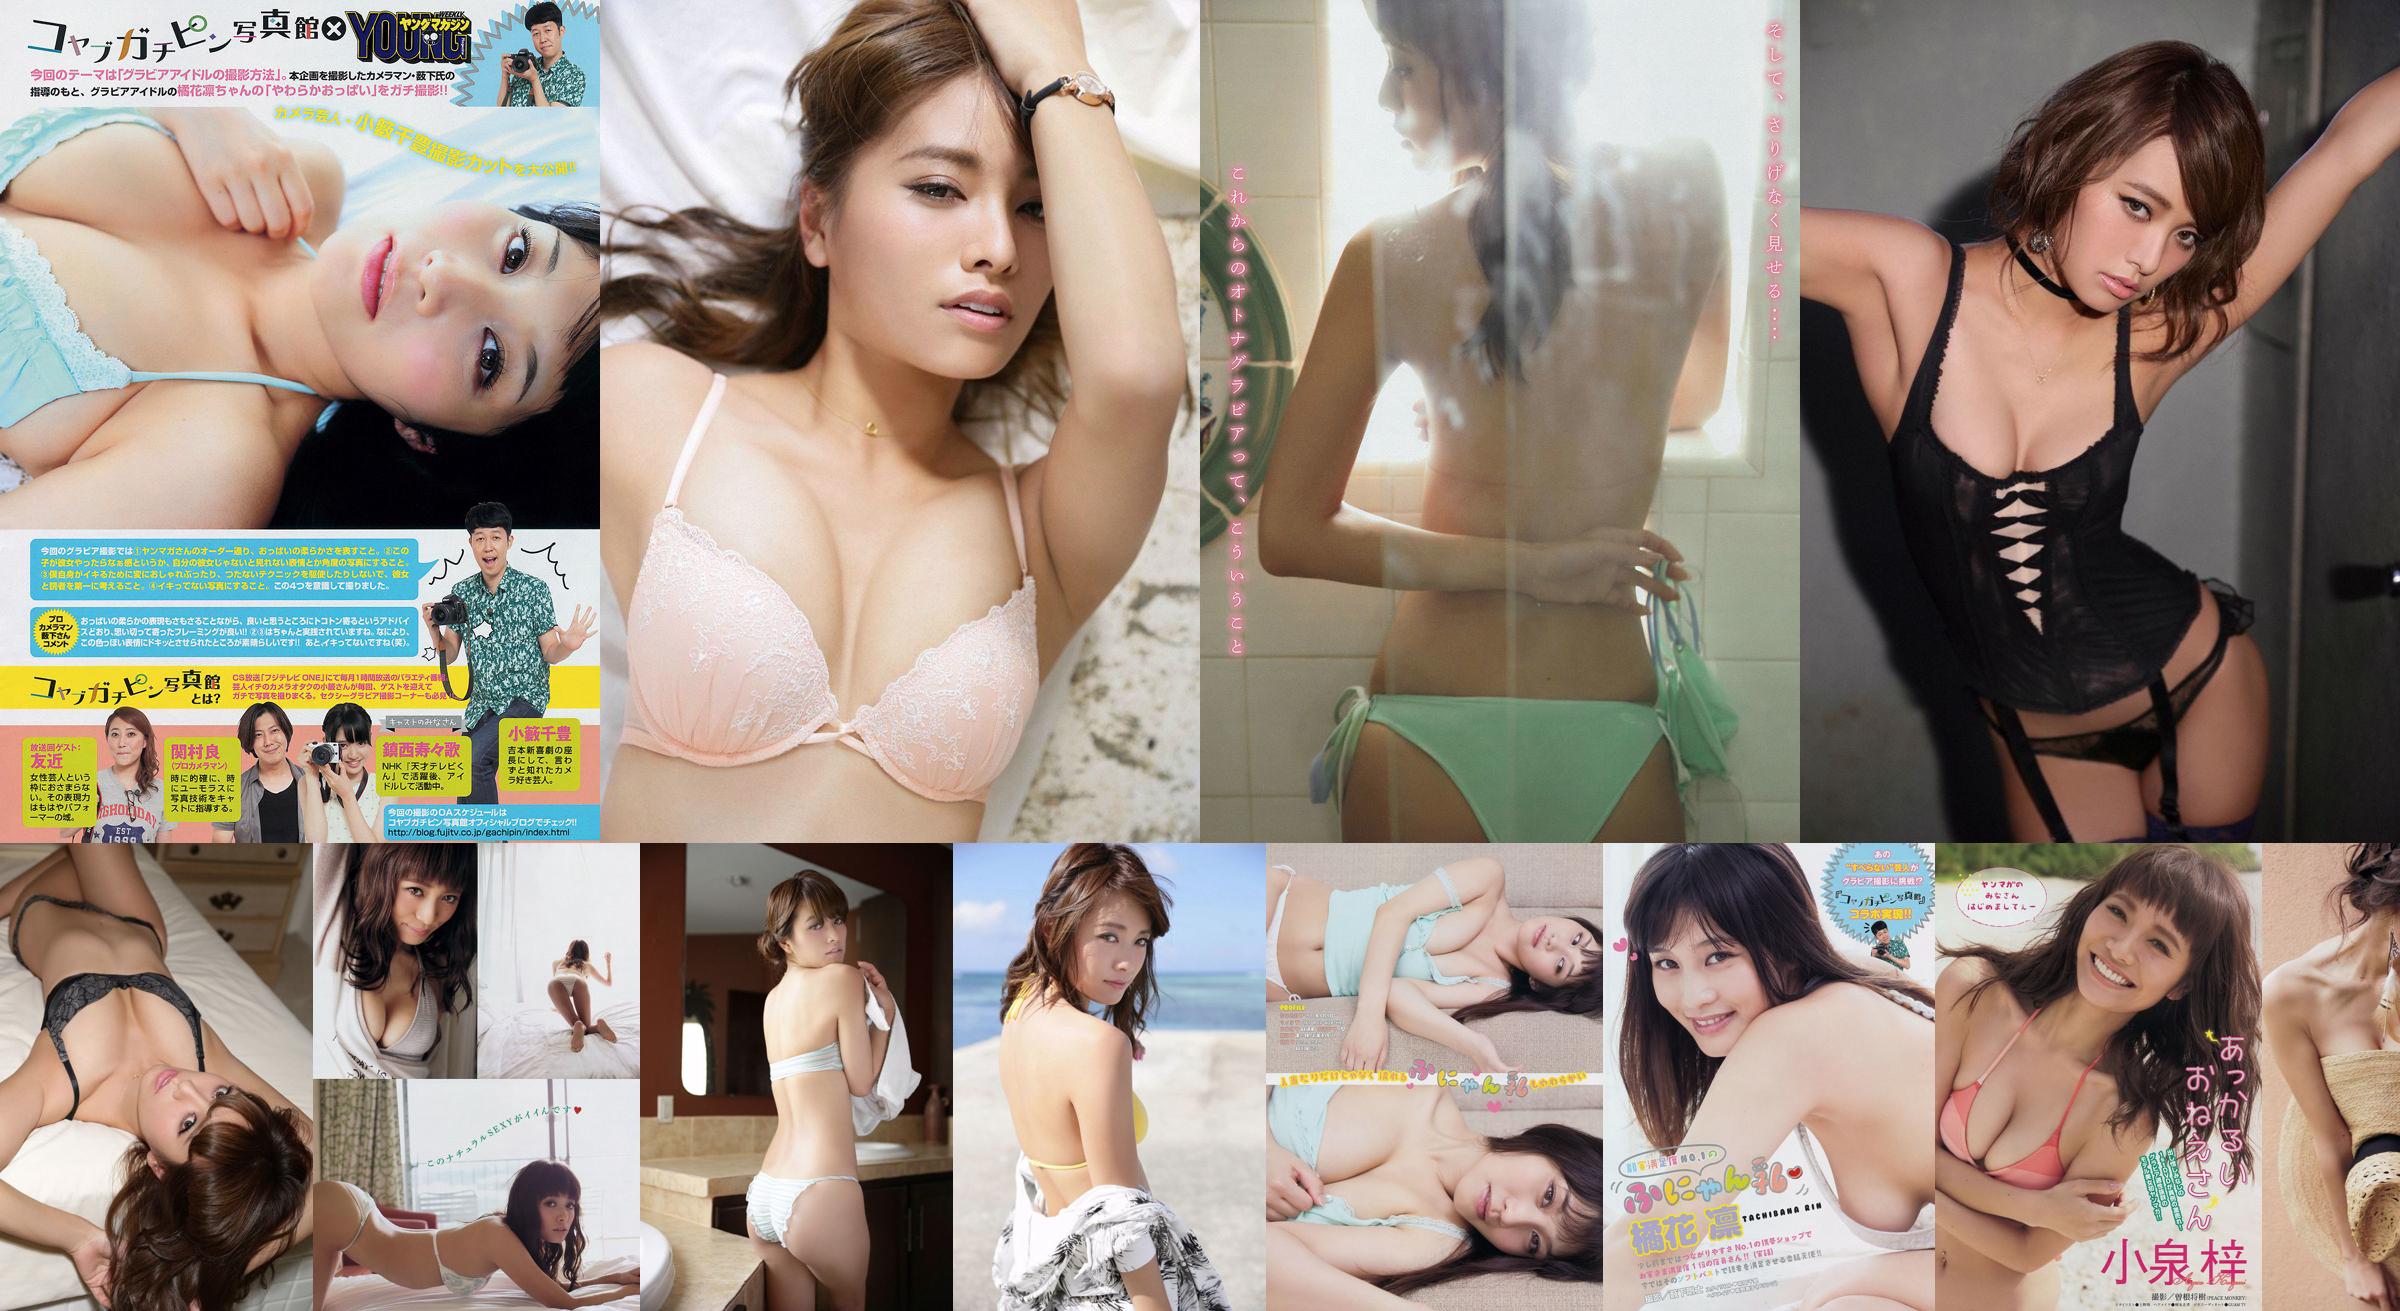 [Junges Magazin] Azusa Koizumi Tachibana Rin 2014 Nr. 43 Fotomagazin No.315545 Seite 2